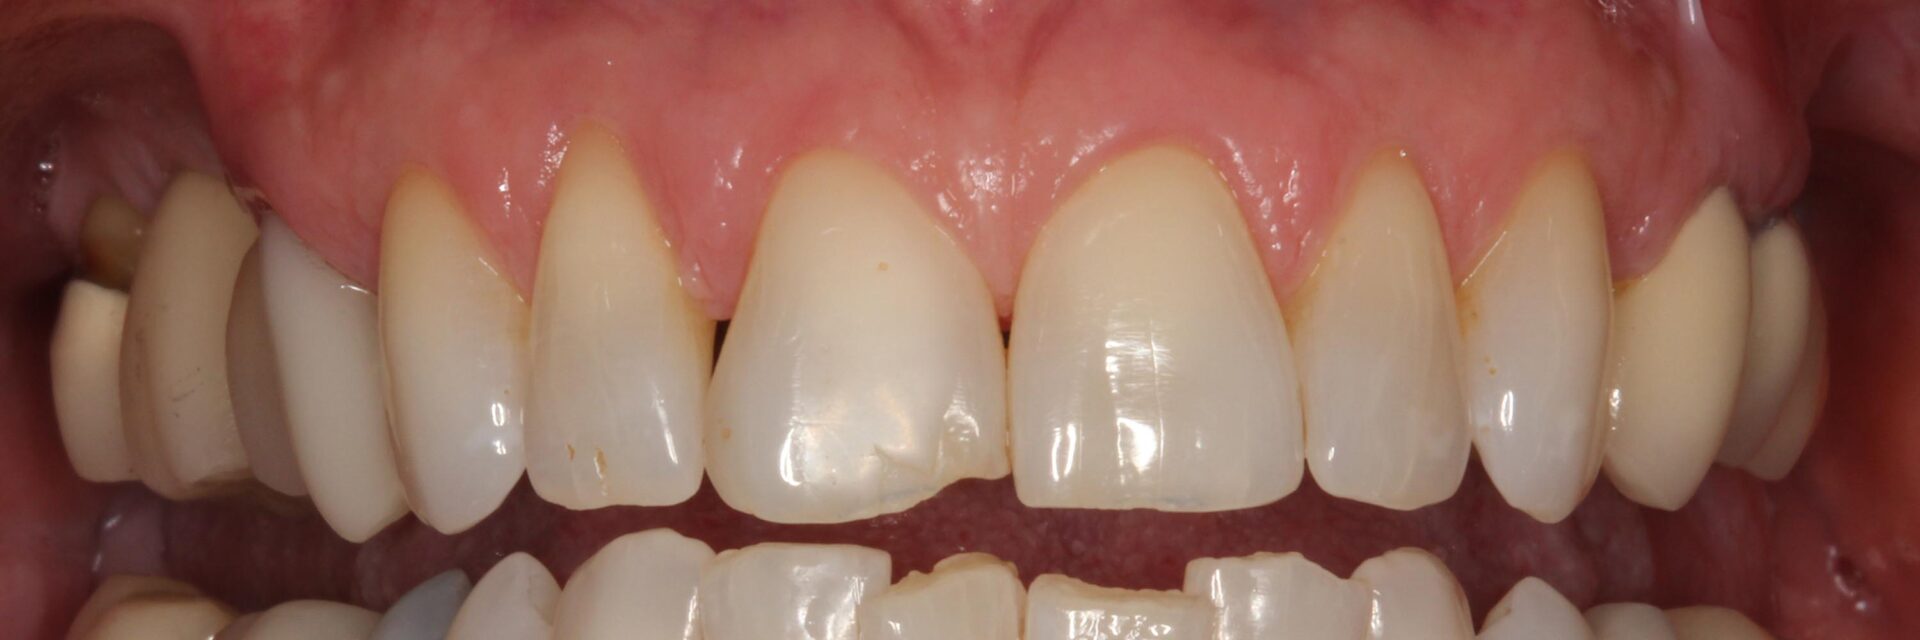 Teeth that needs crown restorations